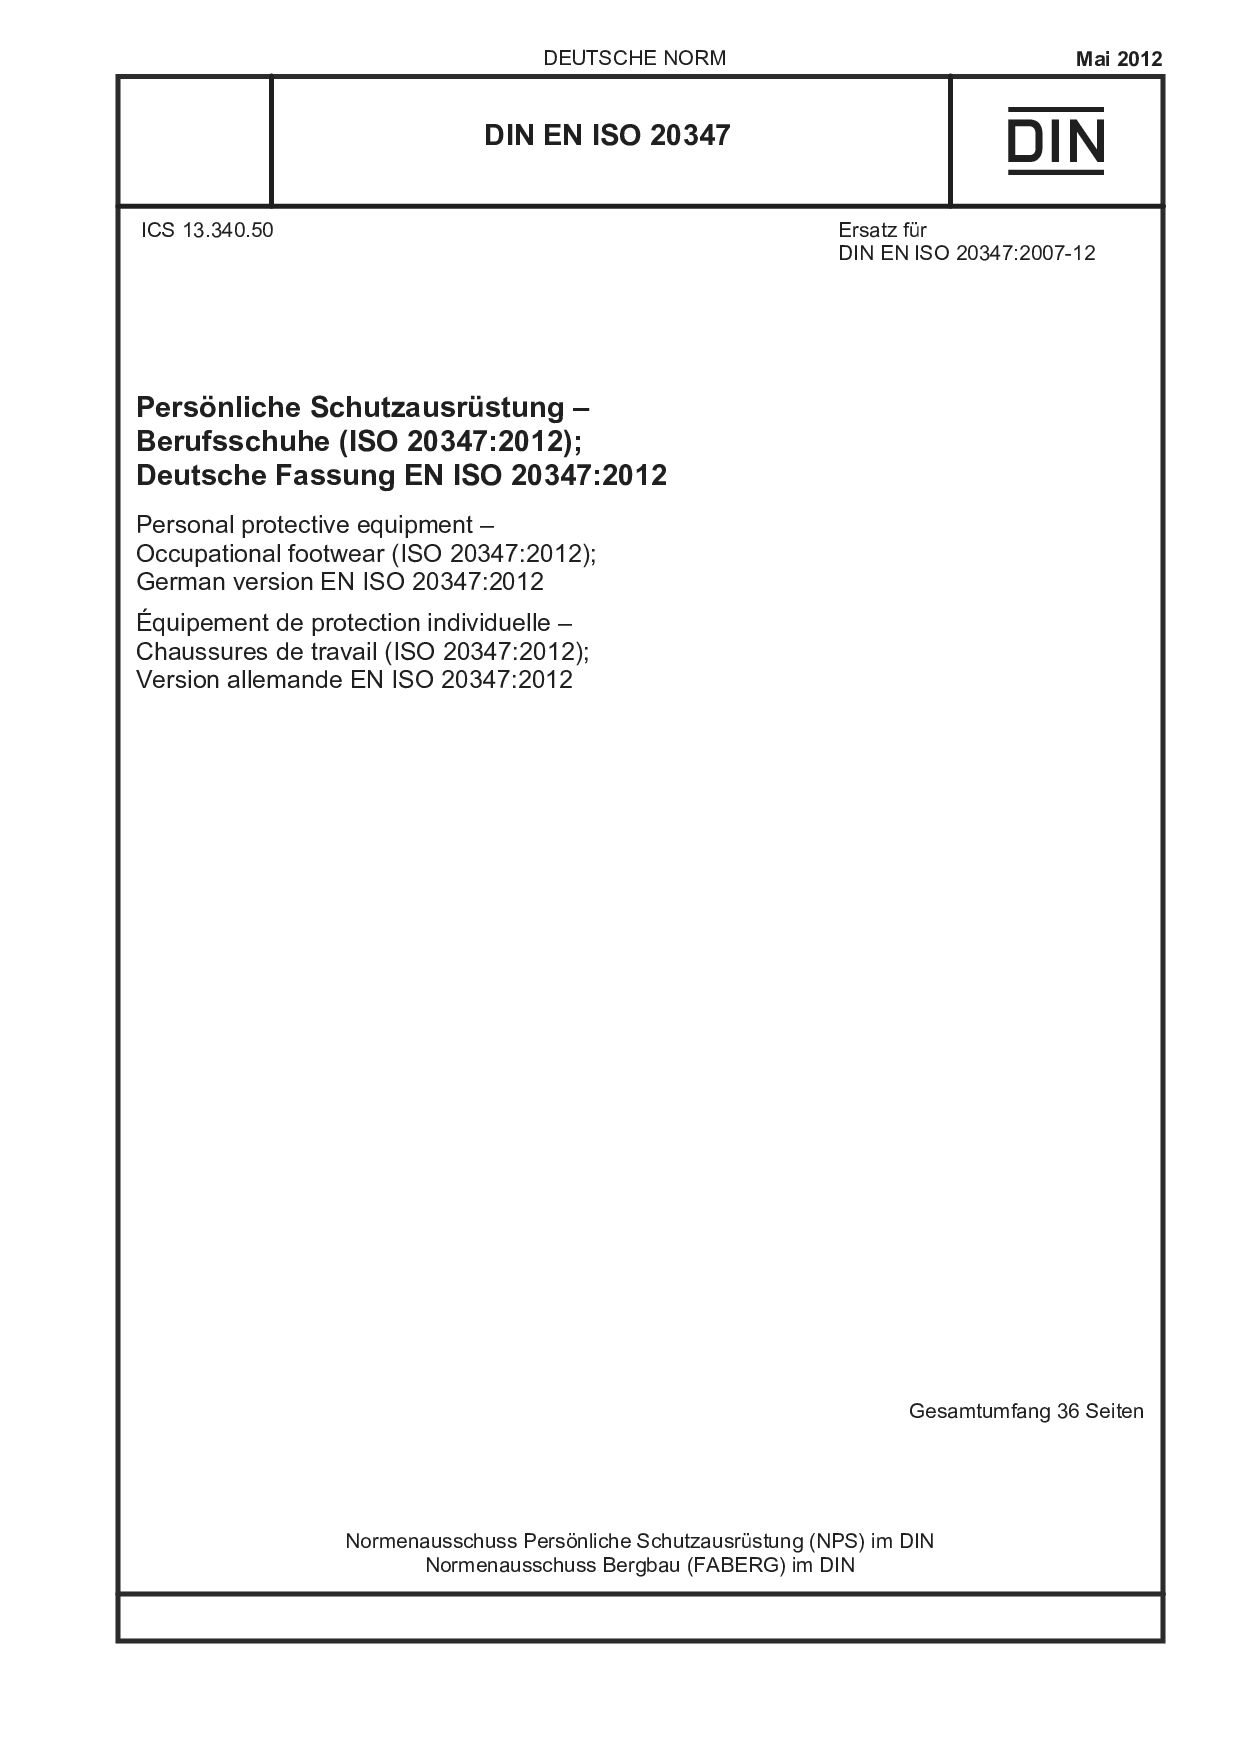 DIN EN ISO 20347:2012封面图